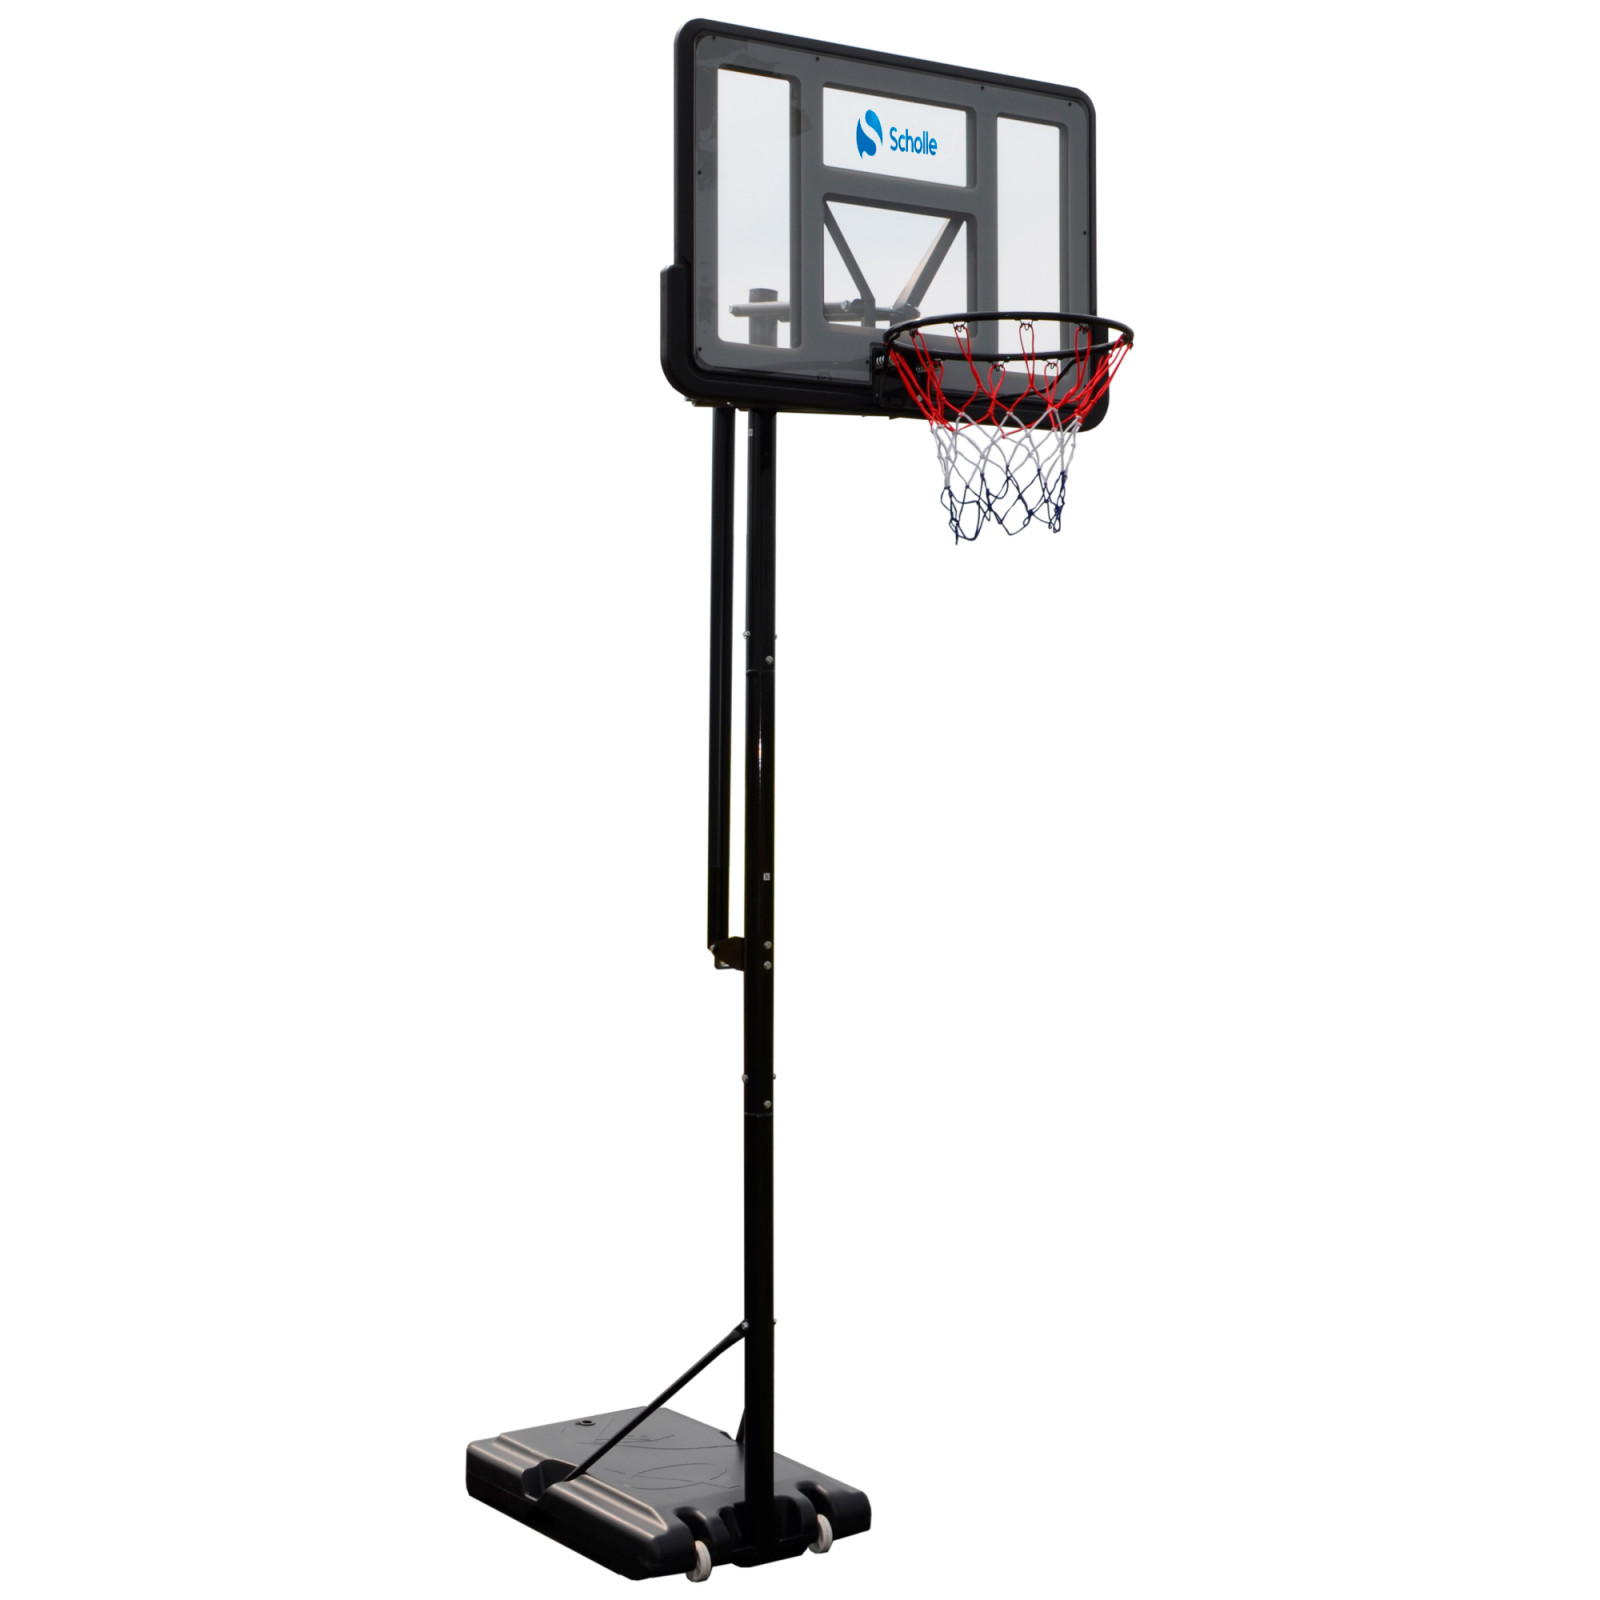 Мобильная баскетбольная стойка Scholle S003-21 1600_1600